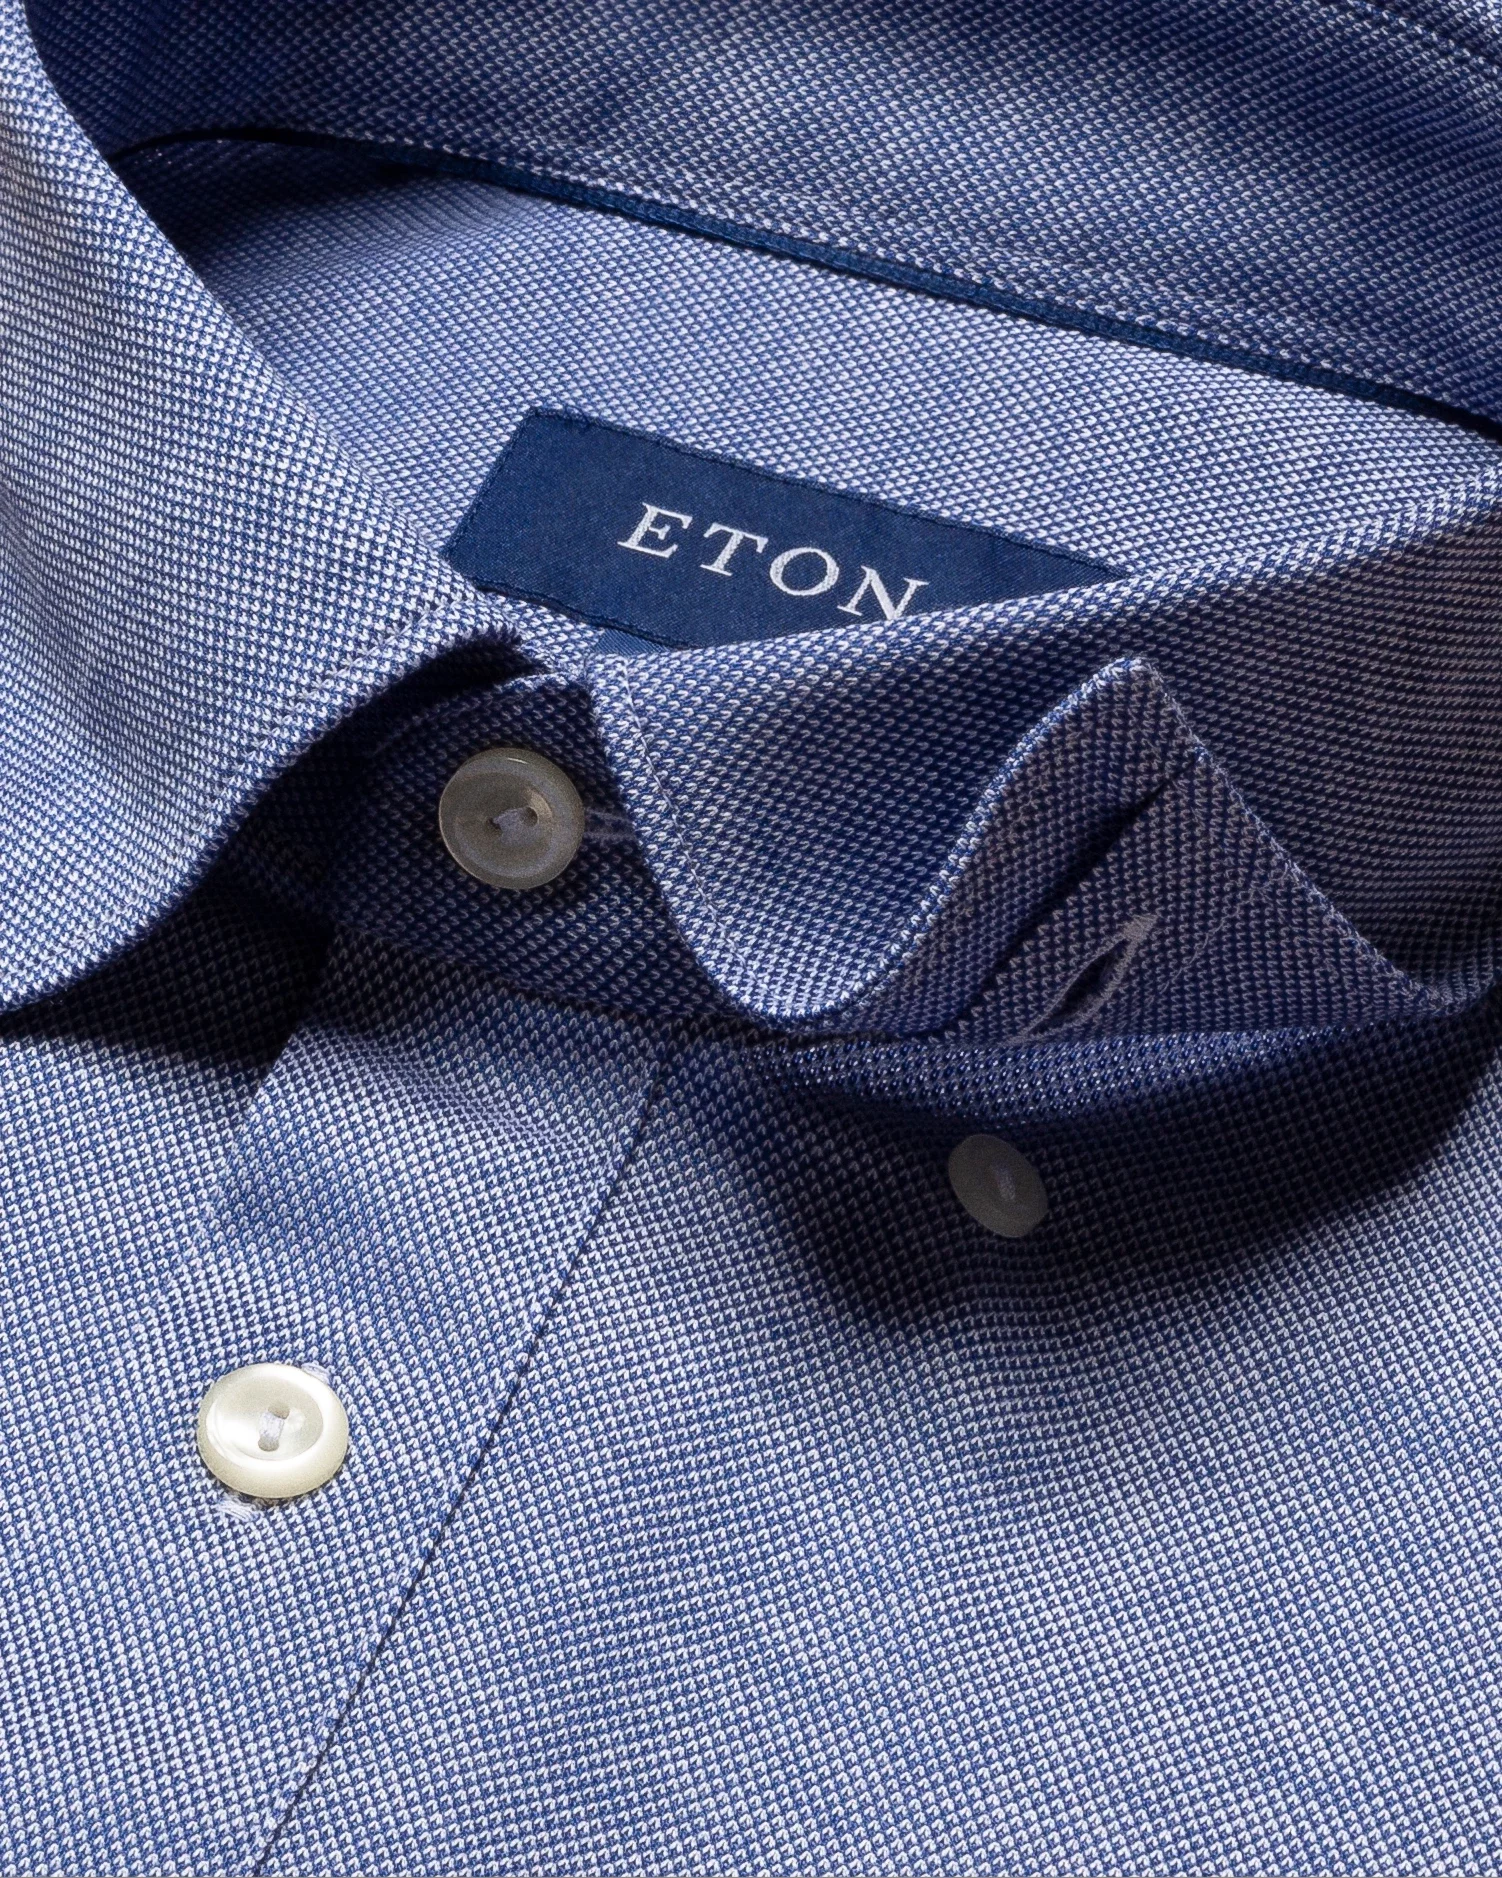 Eton - dark blue short sleeve